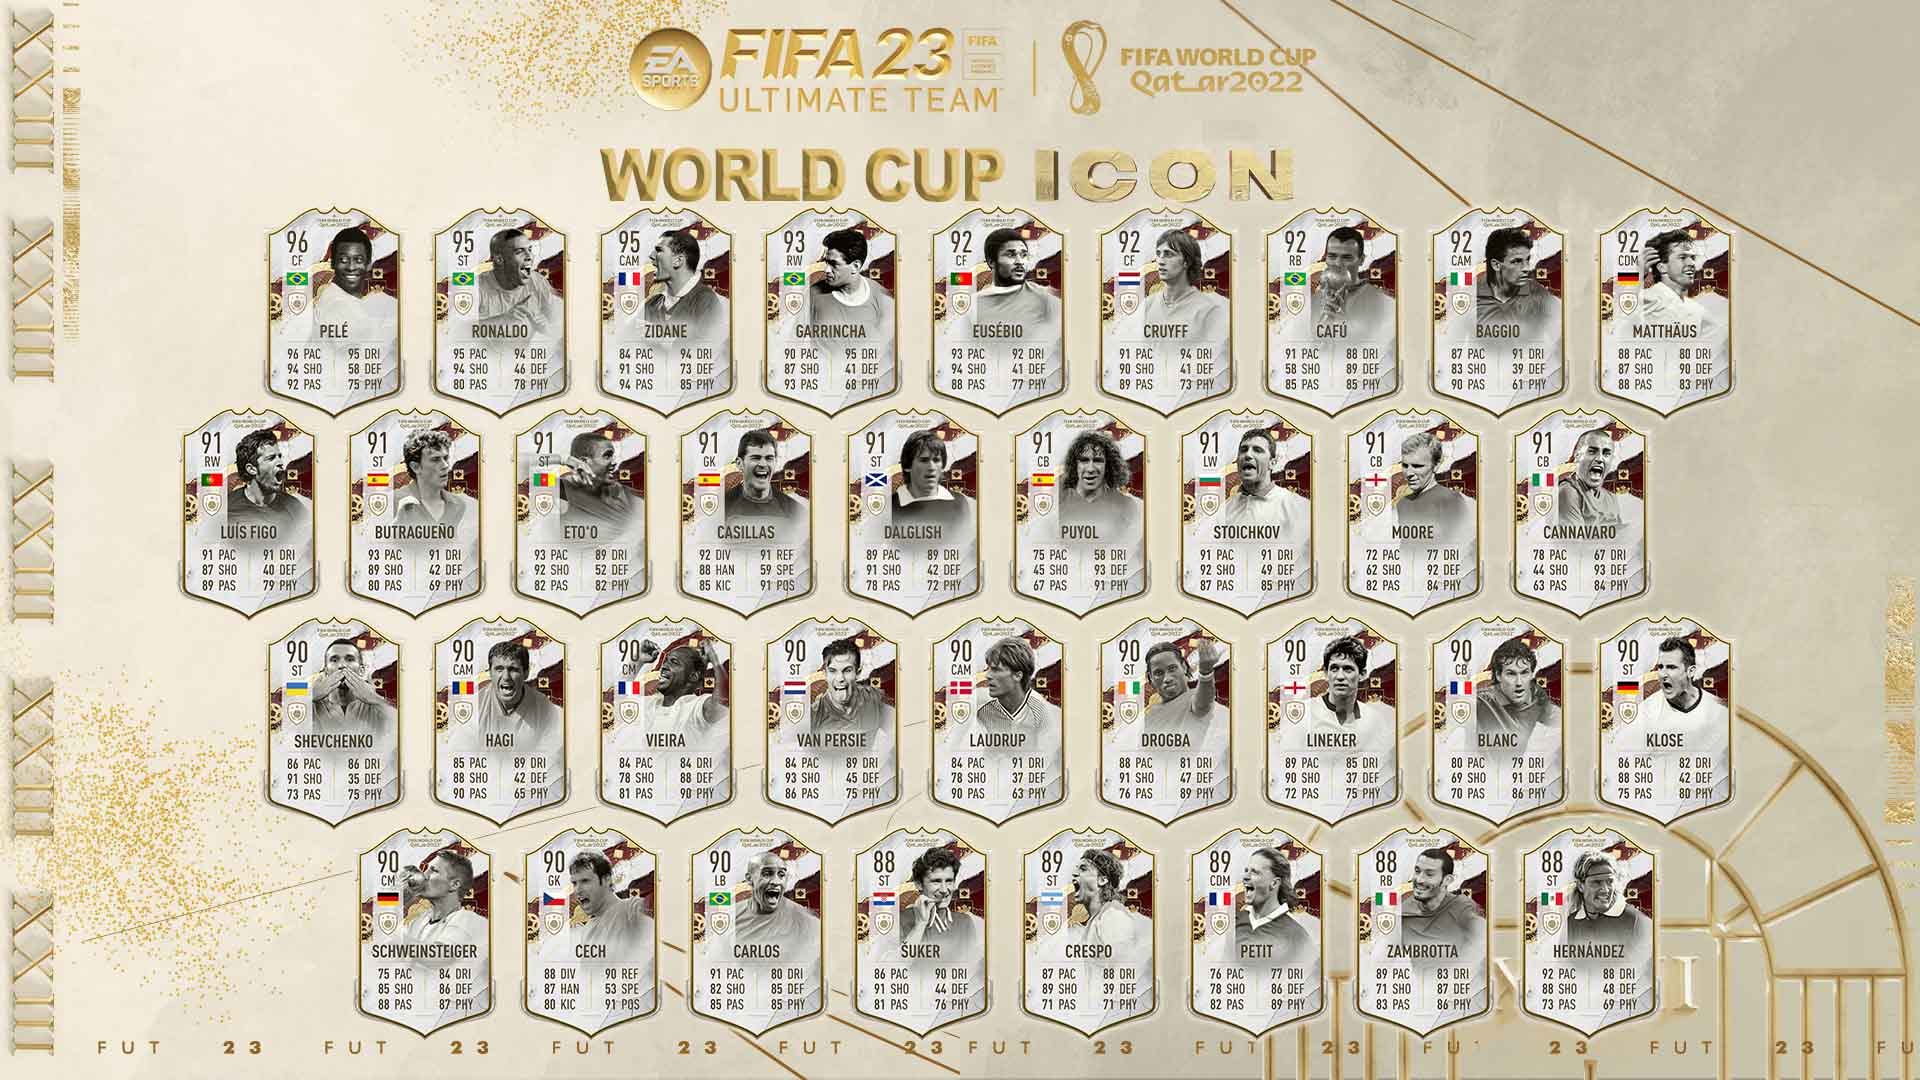 Bilder zu FIFA 23: World Cup Icons Team 2 ist da - Alle WM Ikonen, Leaks und Infos im Überblick